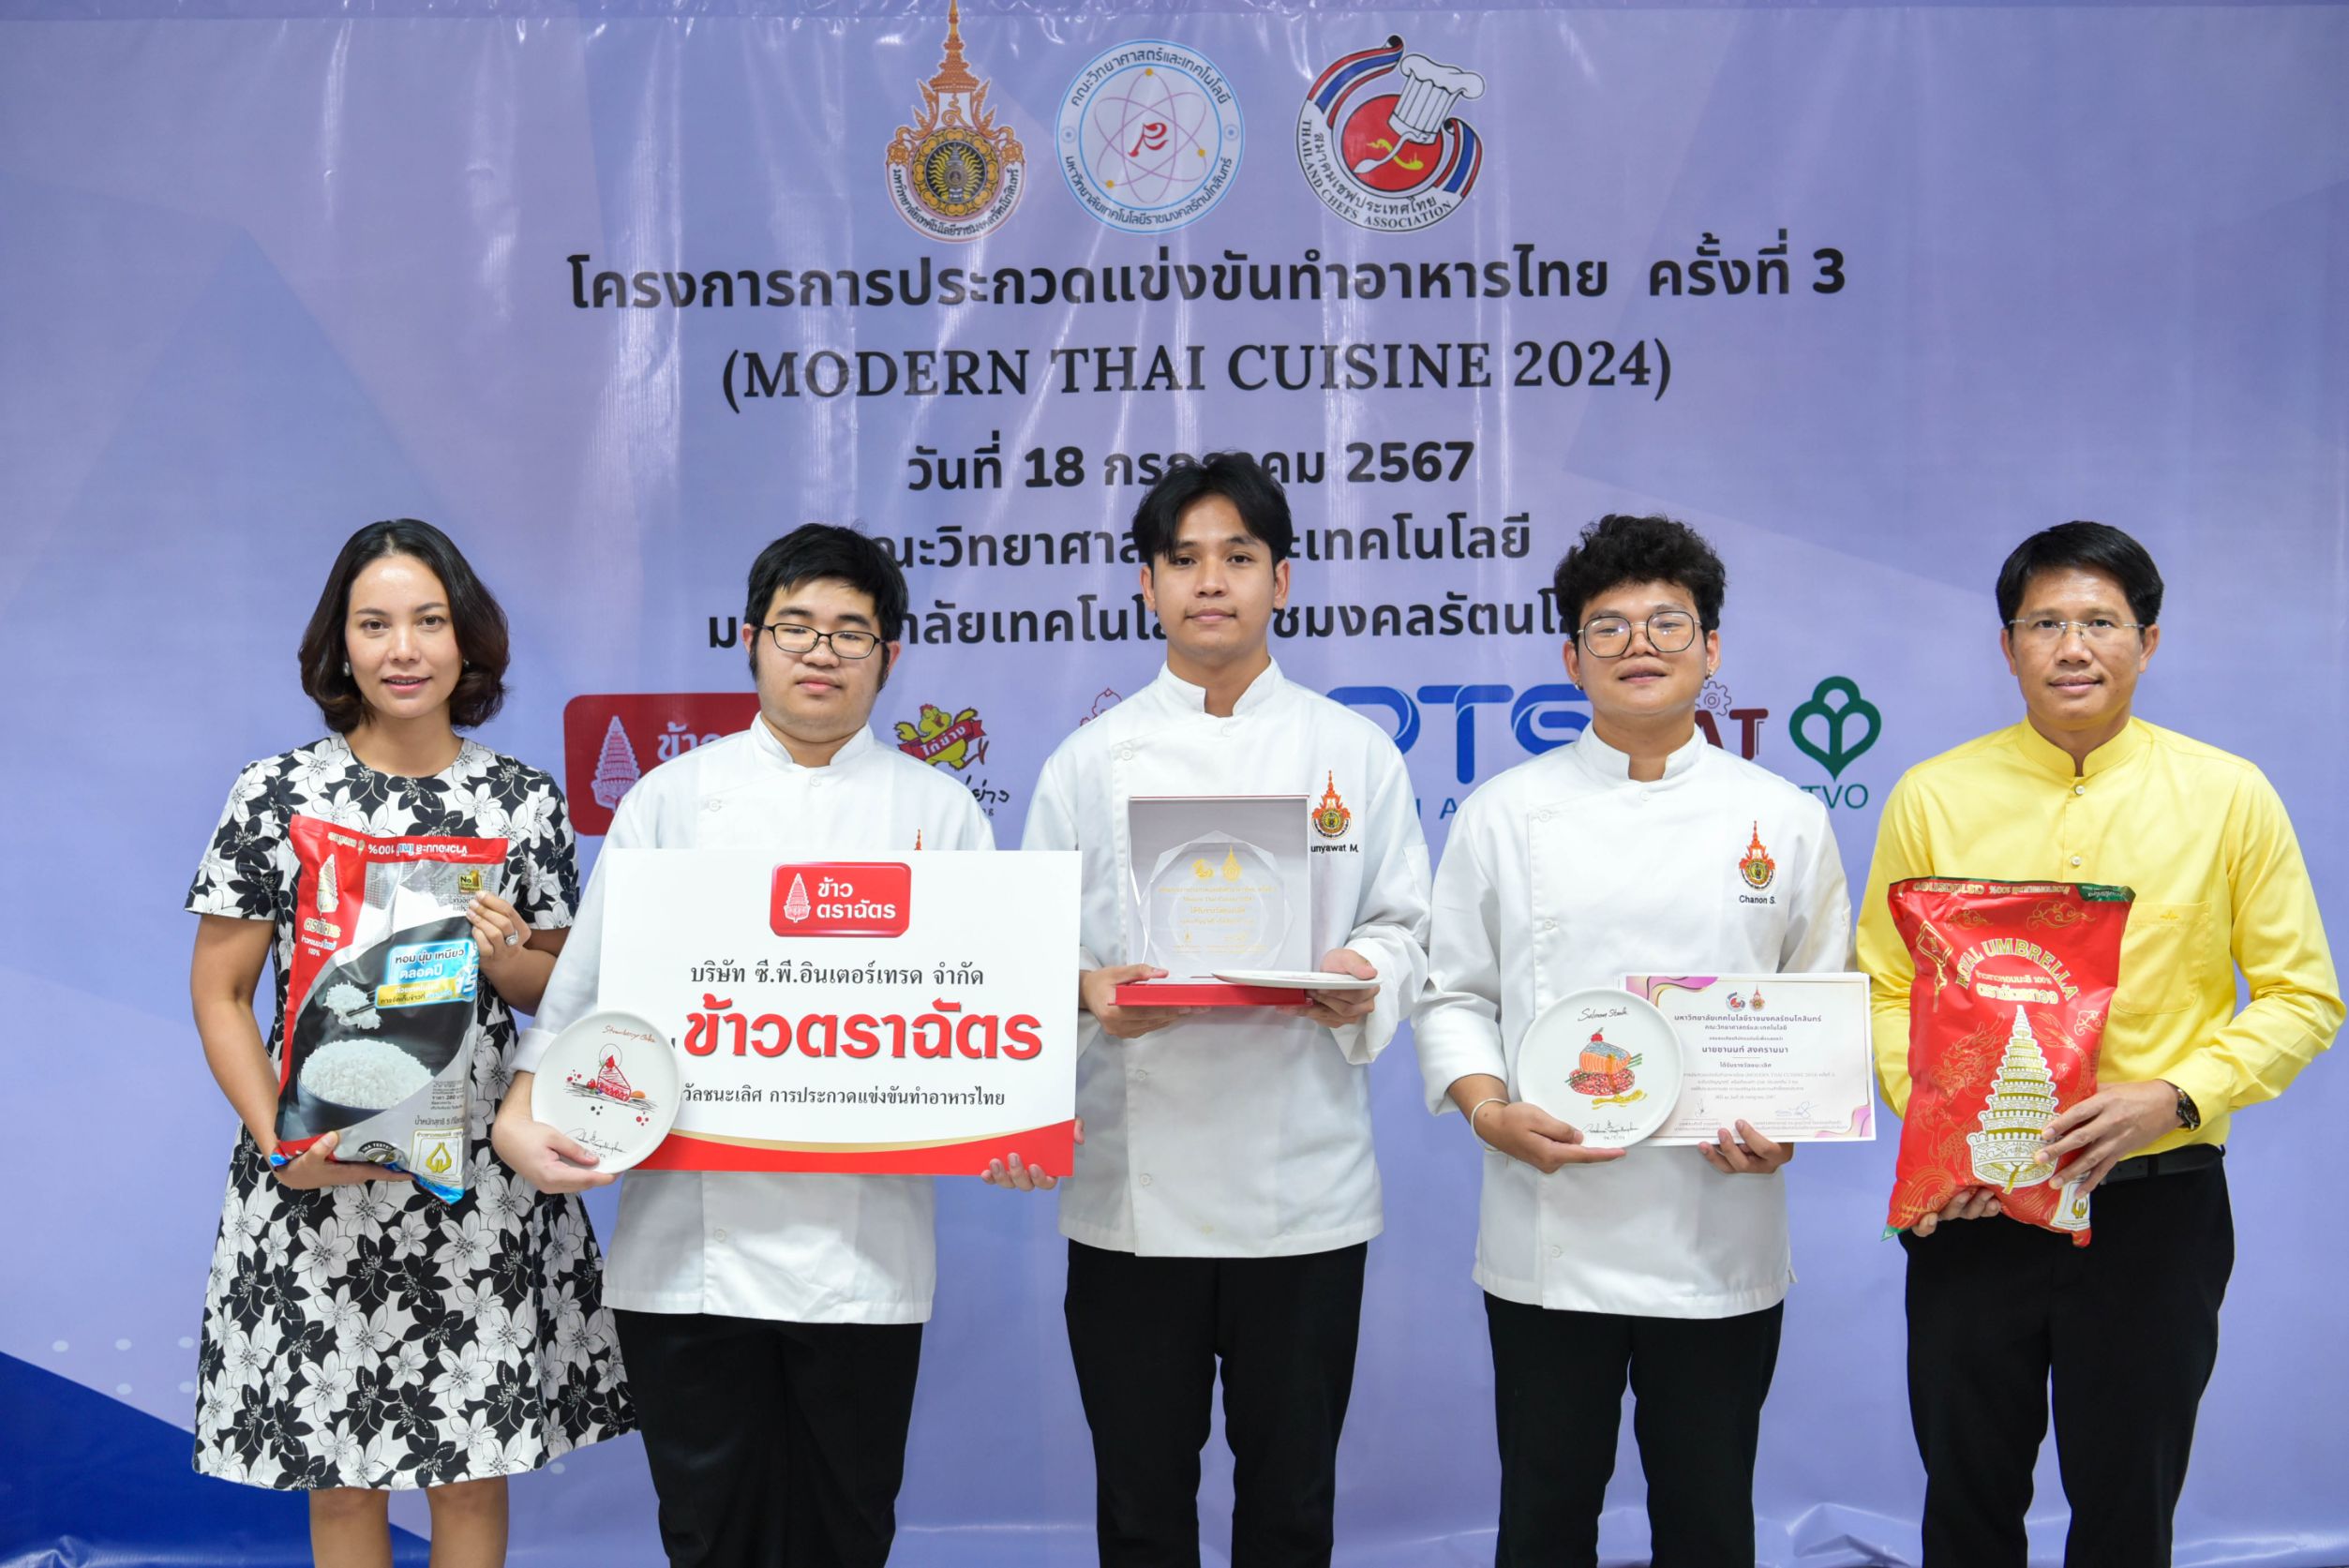 ข้าวตราฉัตร ผลักดันพลัง Youth Power ผ่านการประกวดแข่งขันทำอาหารไทย (Modern Thai Cuisine 2024)